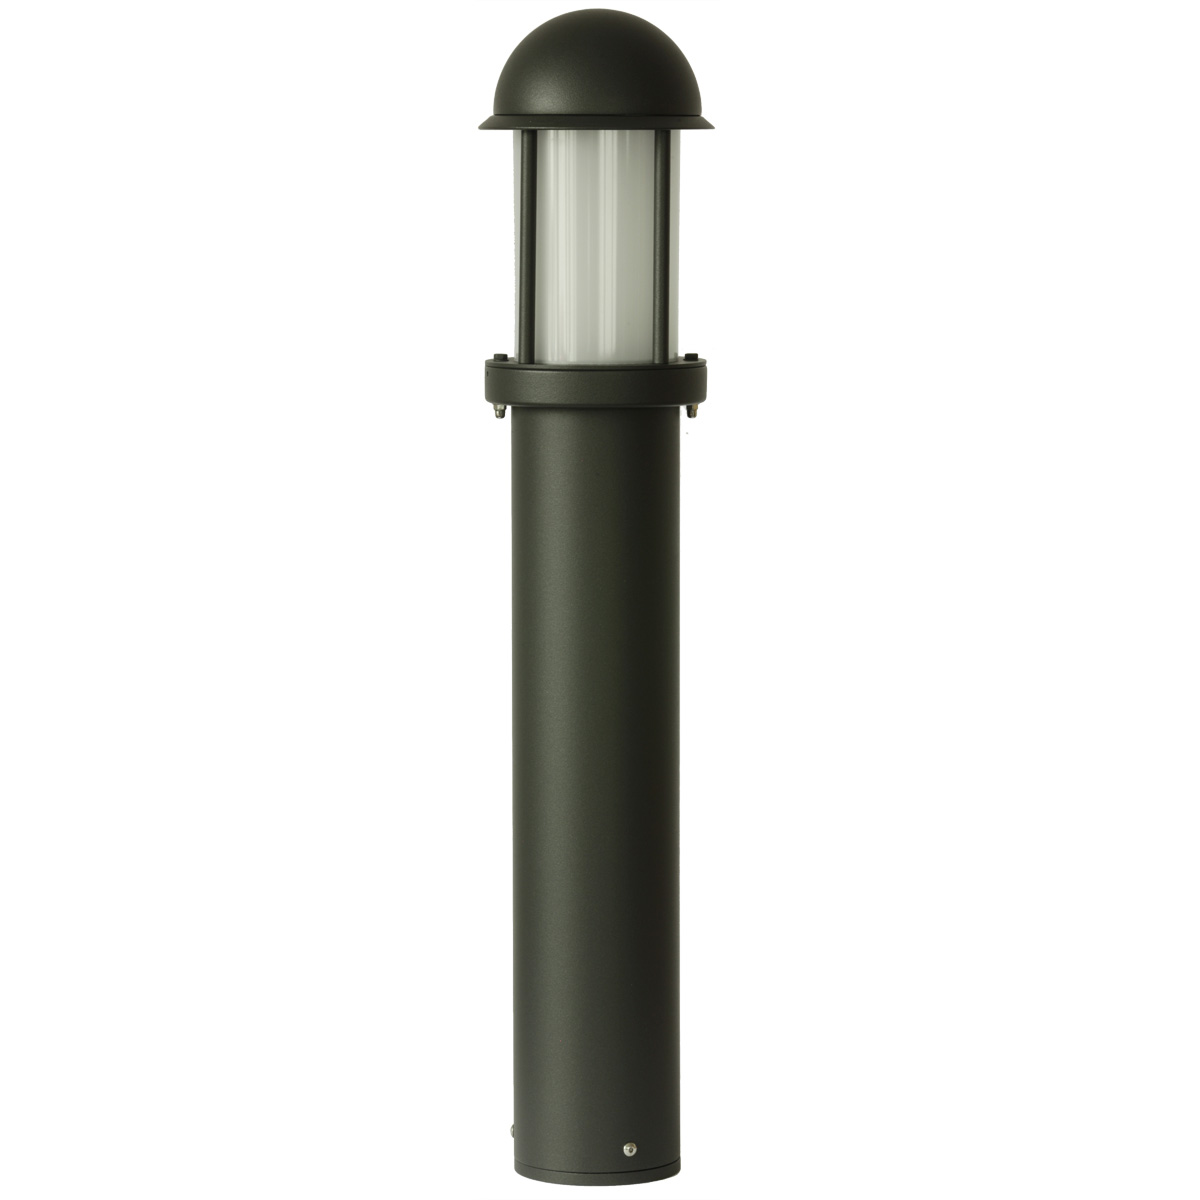 1 x Watt/Garden Lighting/Lights/Lamps QAZQA Modern Modern Rectangle Outdoor Pole/Bollard/Post Pole 100cm Black with Glass Rotterdam Aluminium/Oblong E27 Max 